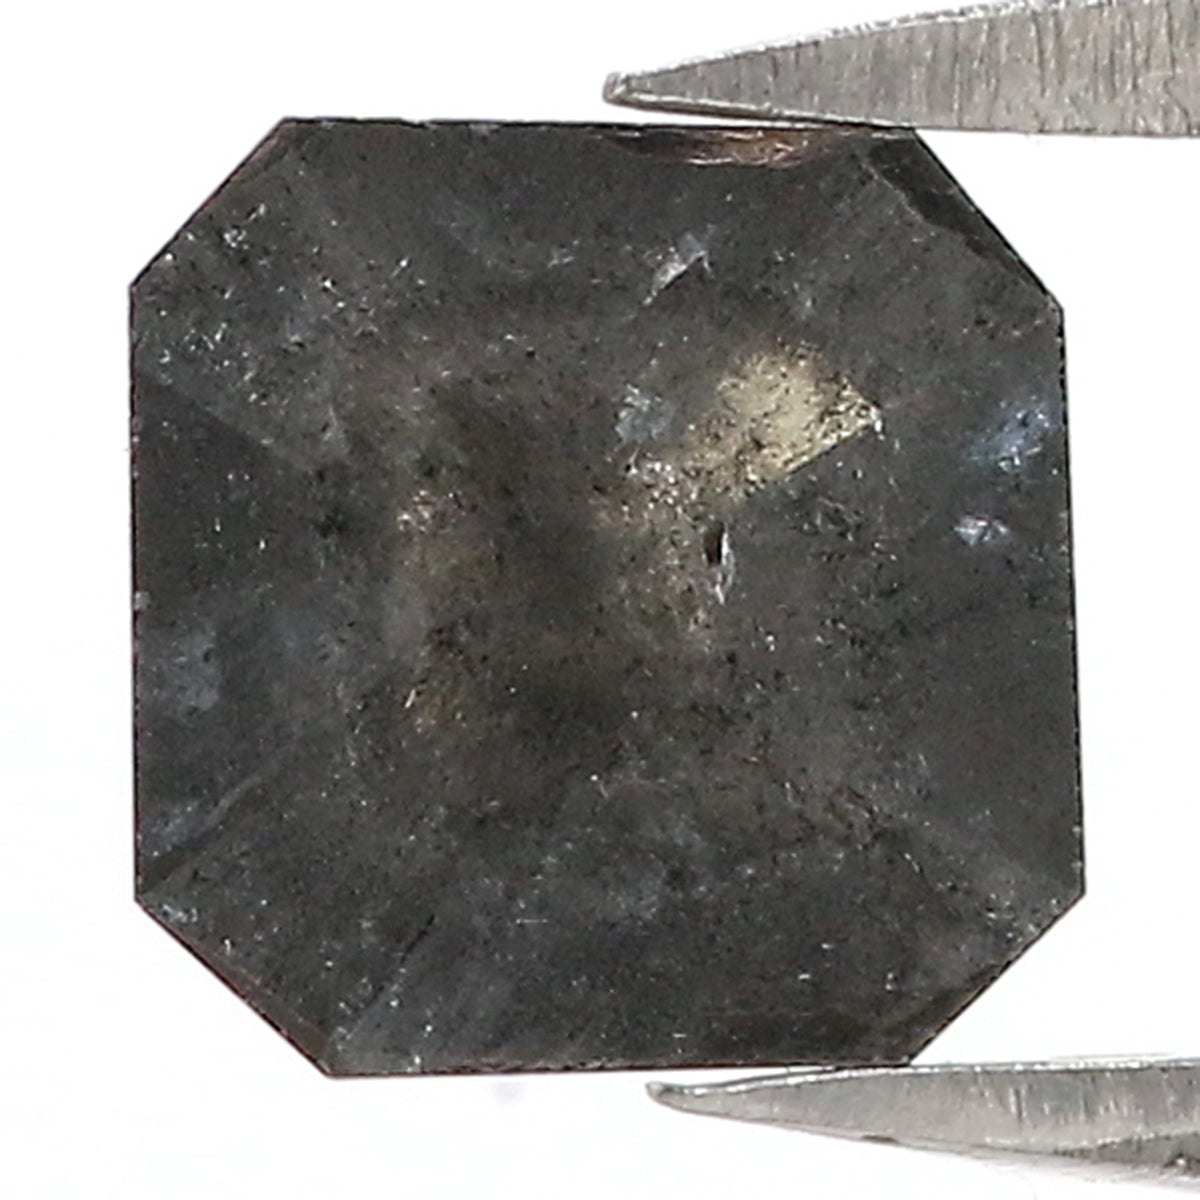 1.33 CT Natural Loose Asscher Shape Diamond Salt And Pepper Asscher Shape Diamond 6.90 MM Black Grey Color Asscher Rose Cut Diamond LQ3029